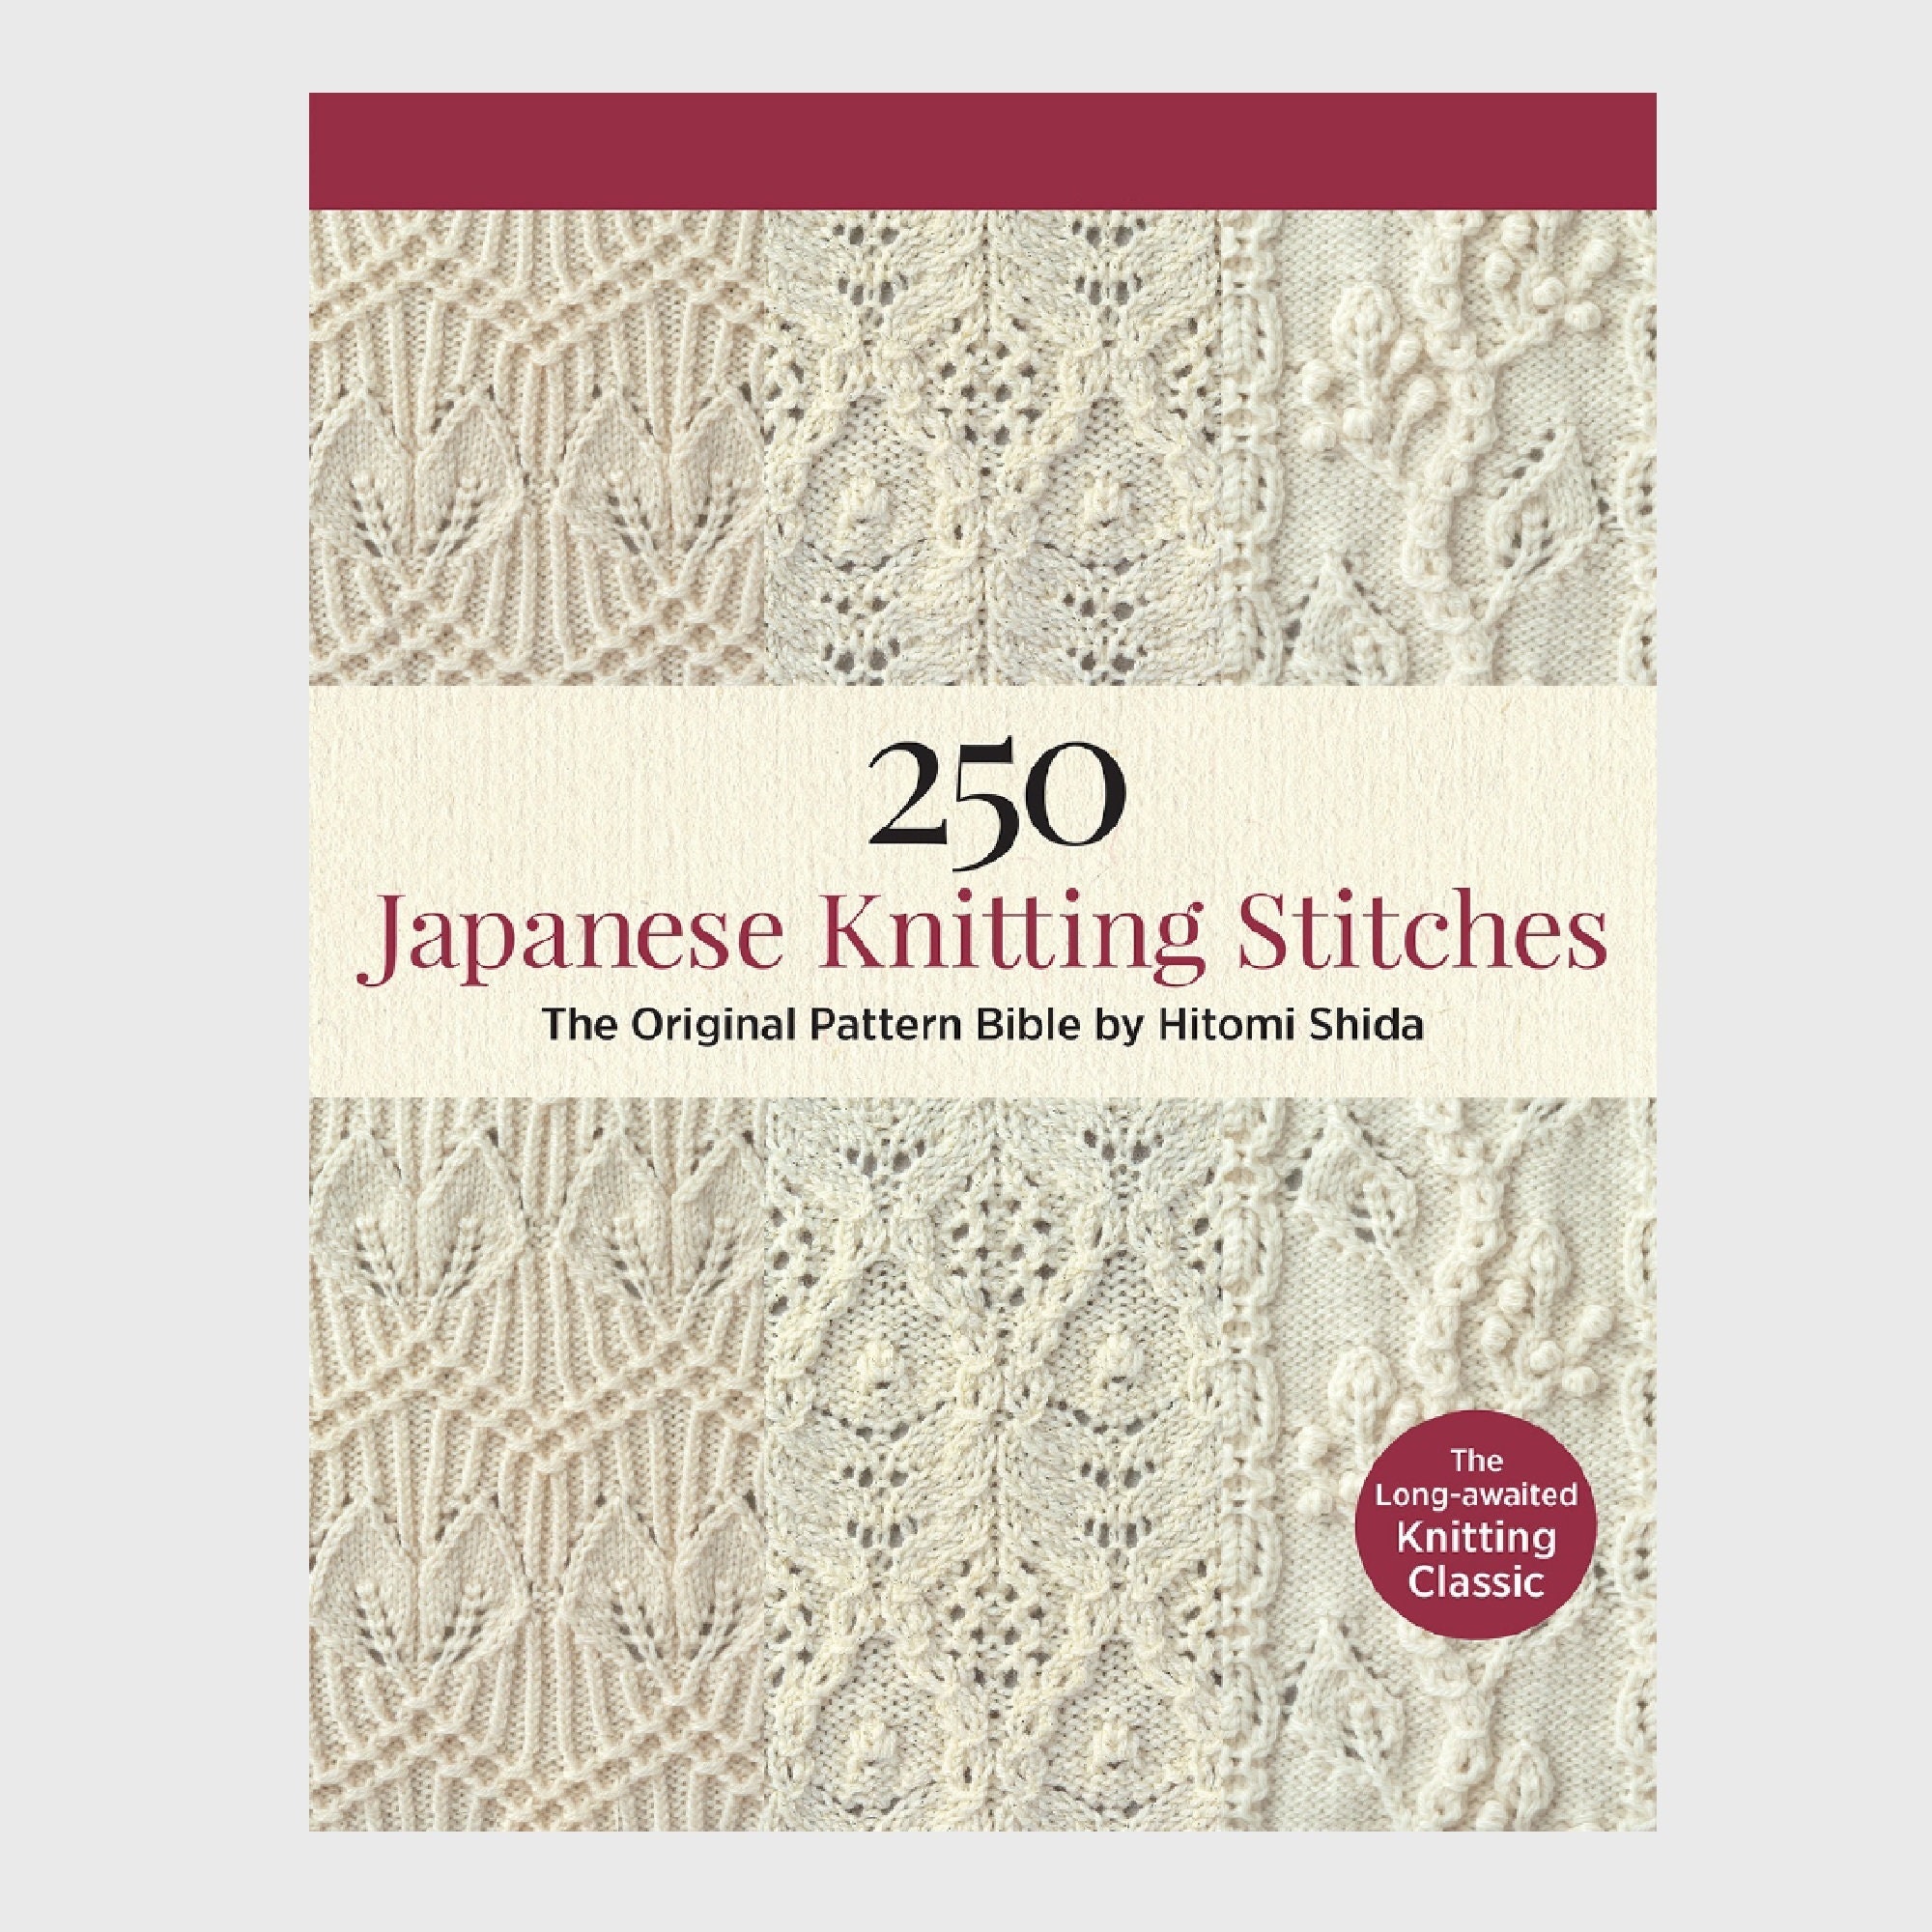 110 Aran Pattern Knitting Book Alan Sweater Knitting Zero Basic